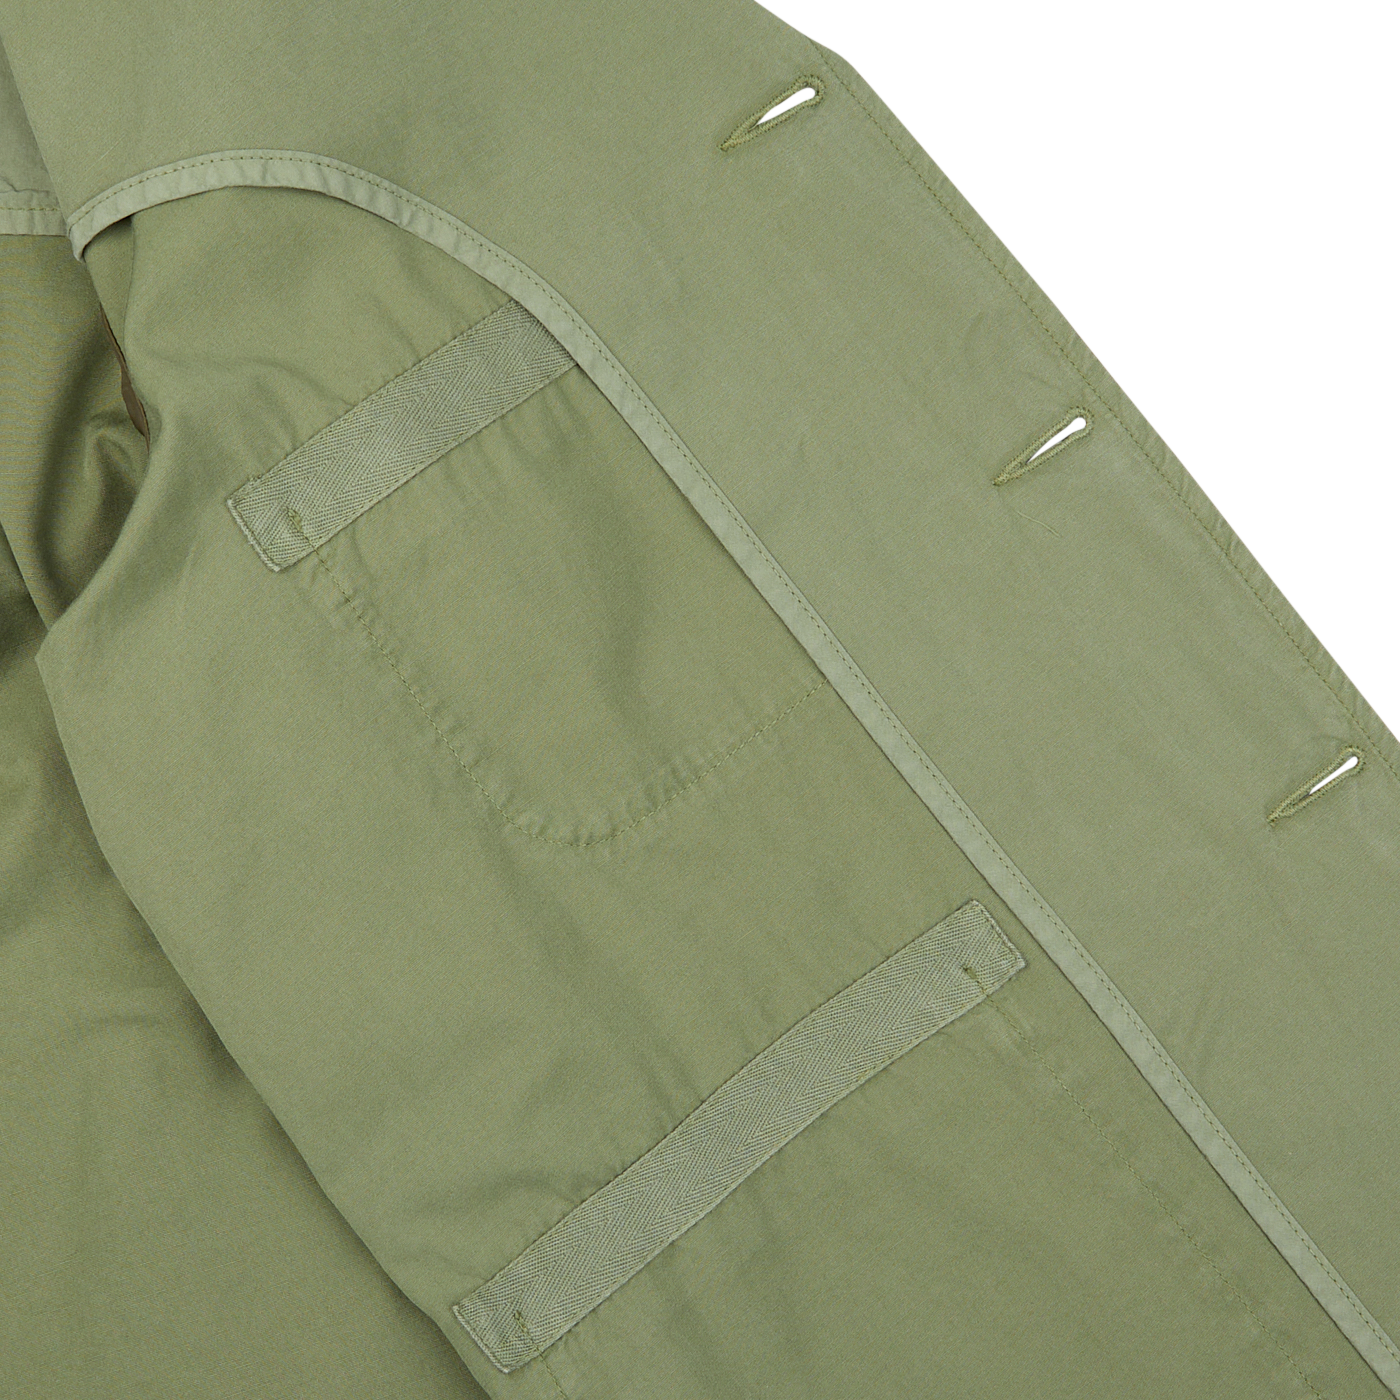 Birch Green Cotton Summer Canvas 5-Pocket Jacket by Universal Works.